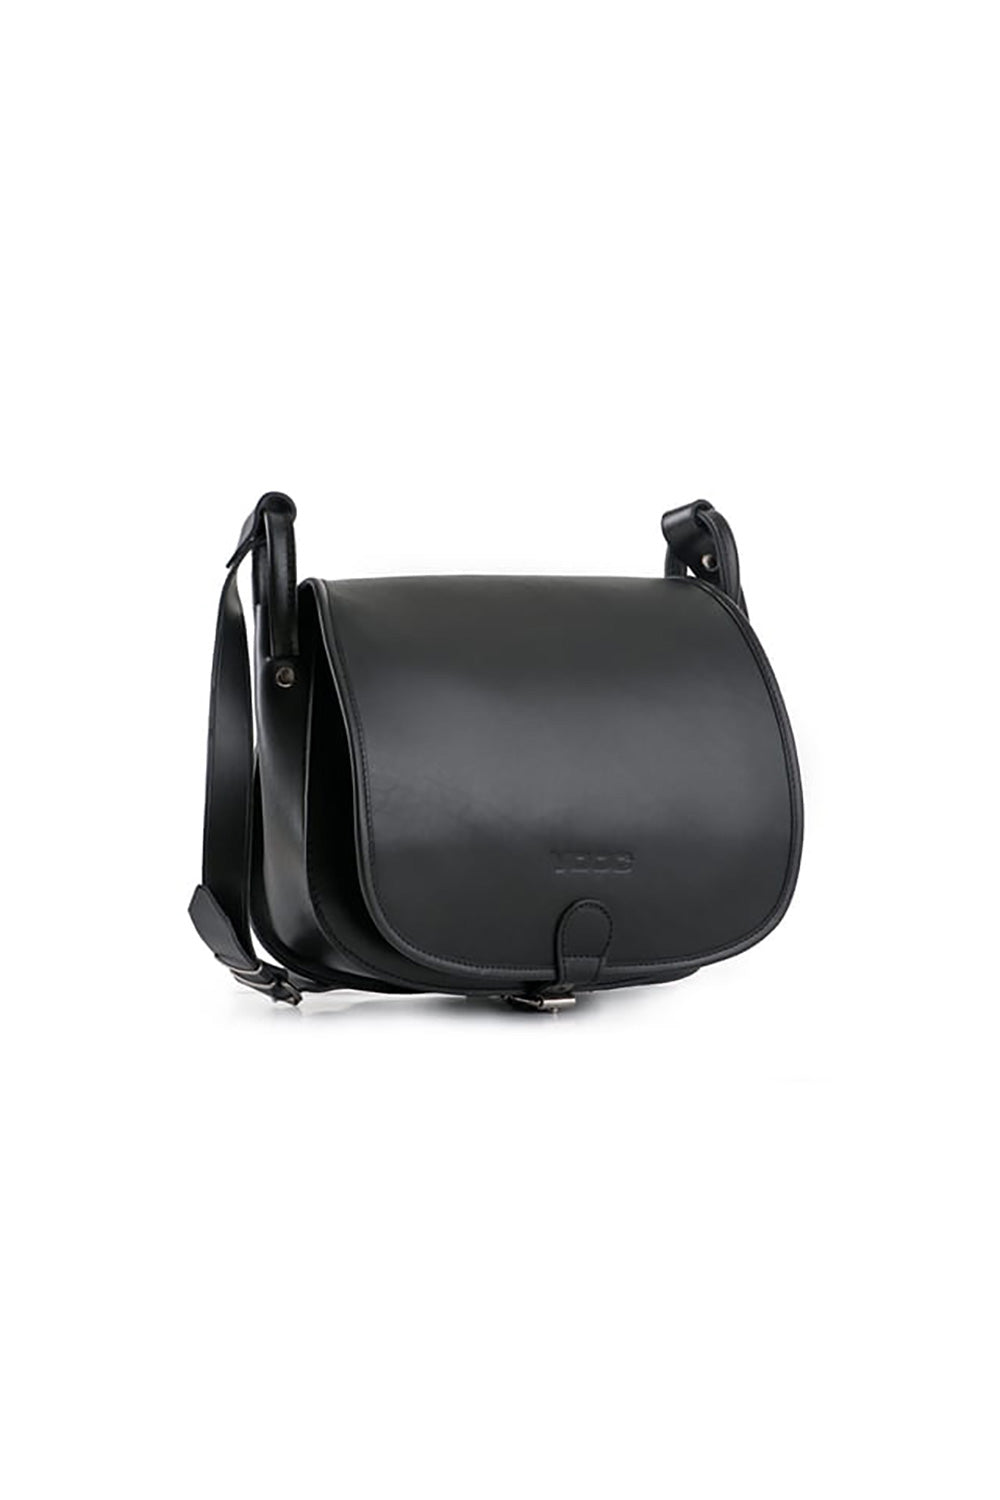 Ladies Casual Shoulder Handbag - Women's Natural leather bag model 152159 - Long Strap - Black Color